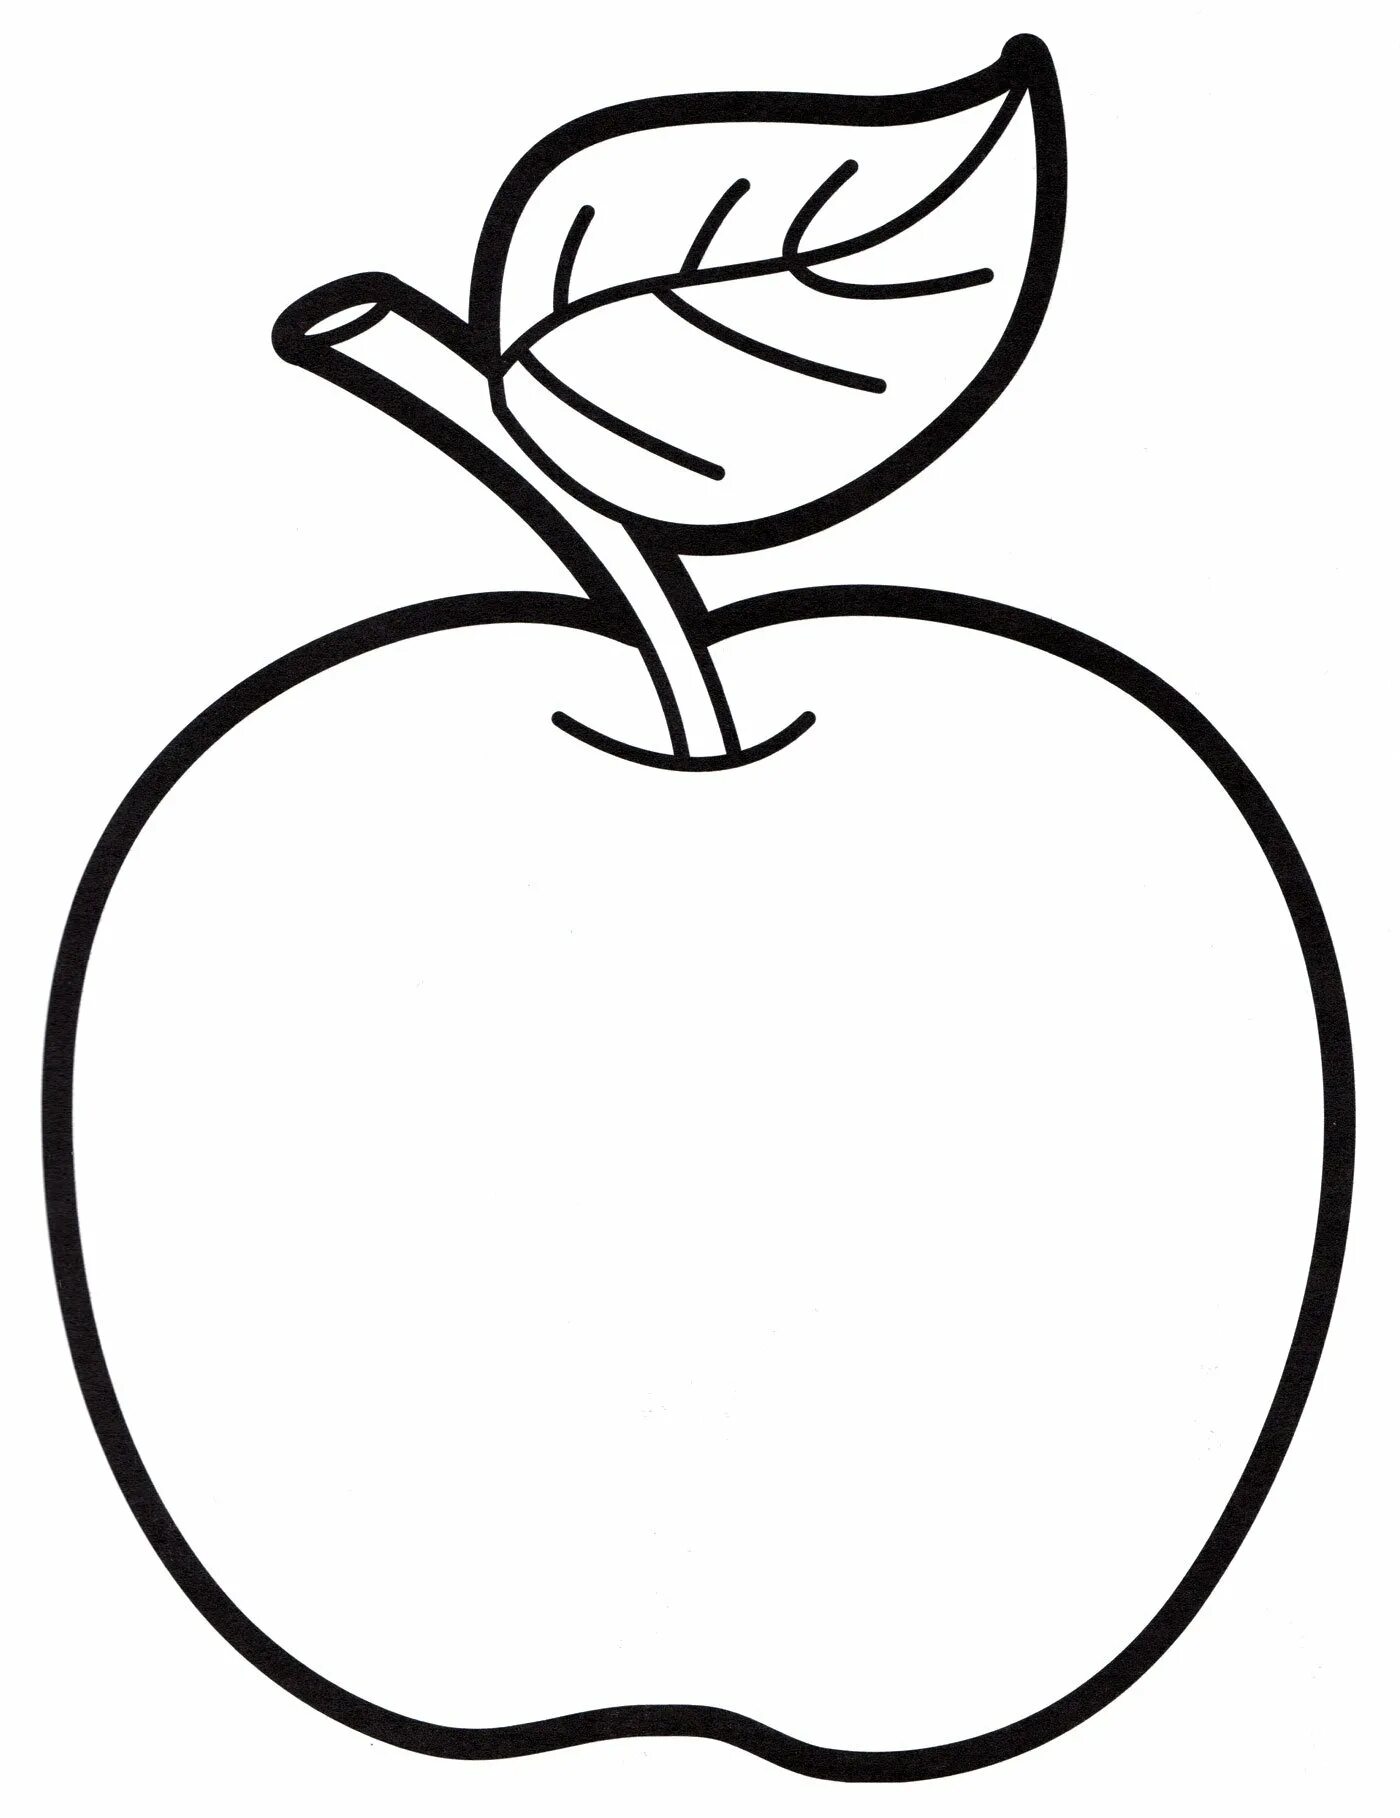 Раскраска 3 яблока. Яблоко раскраска. Яблоко раскраска для детей. Яблоко раскраска для малышей. Яблочко раскраска для детей.